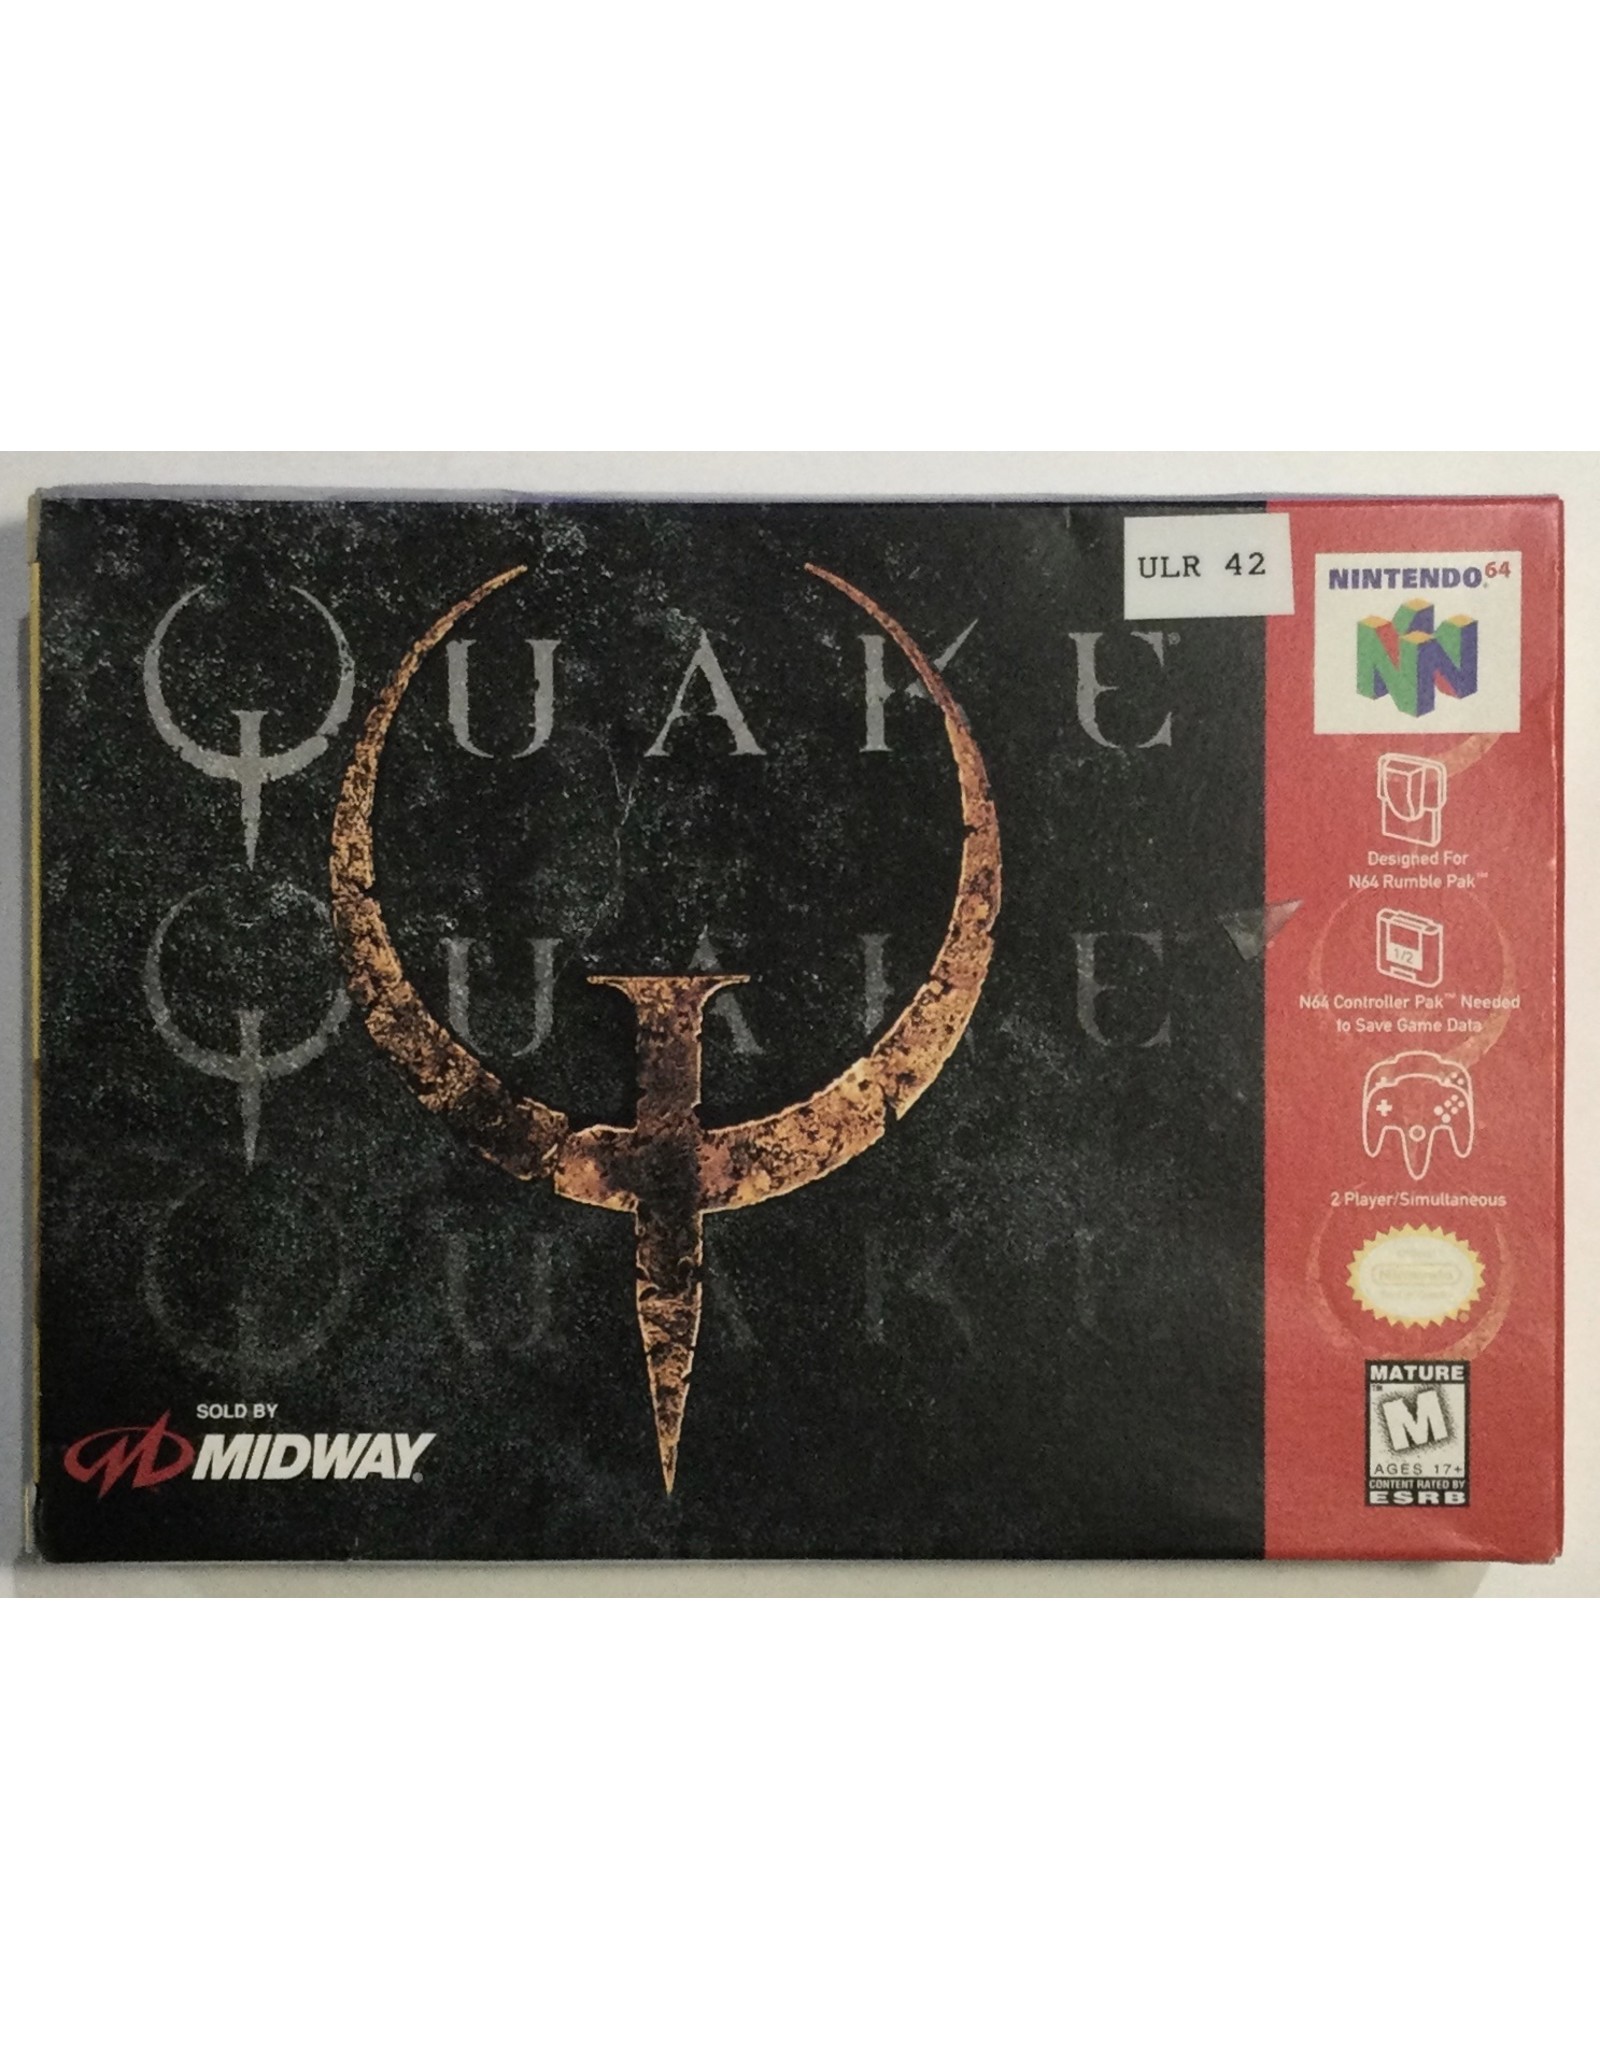 MIDWAY Quake for Nintendo 64 (N64) - CIB